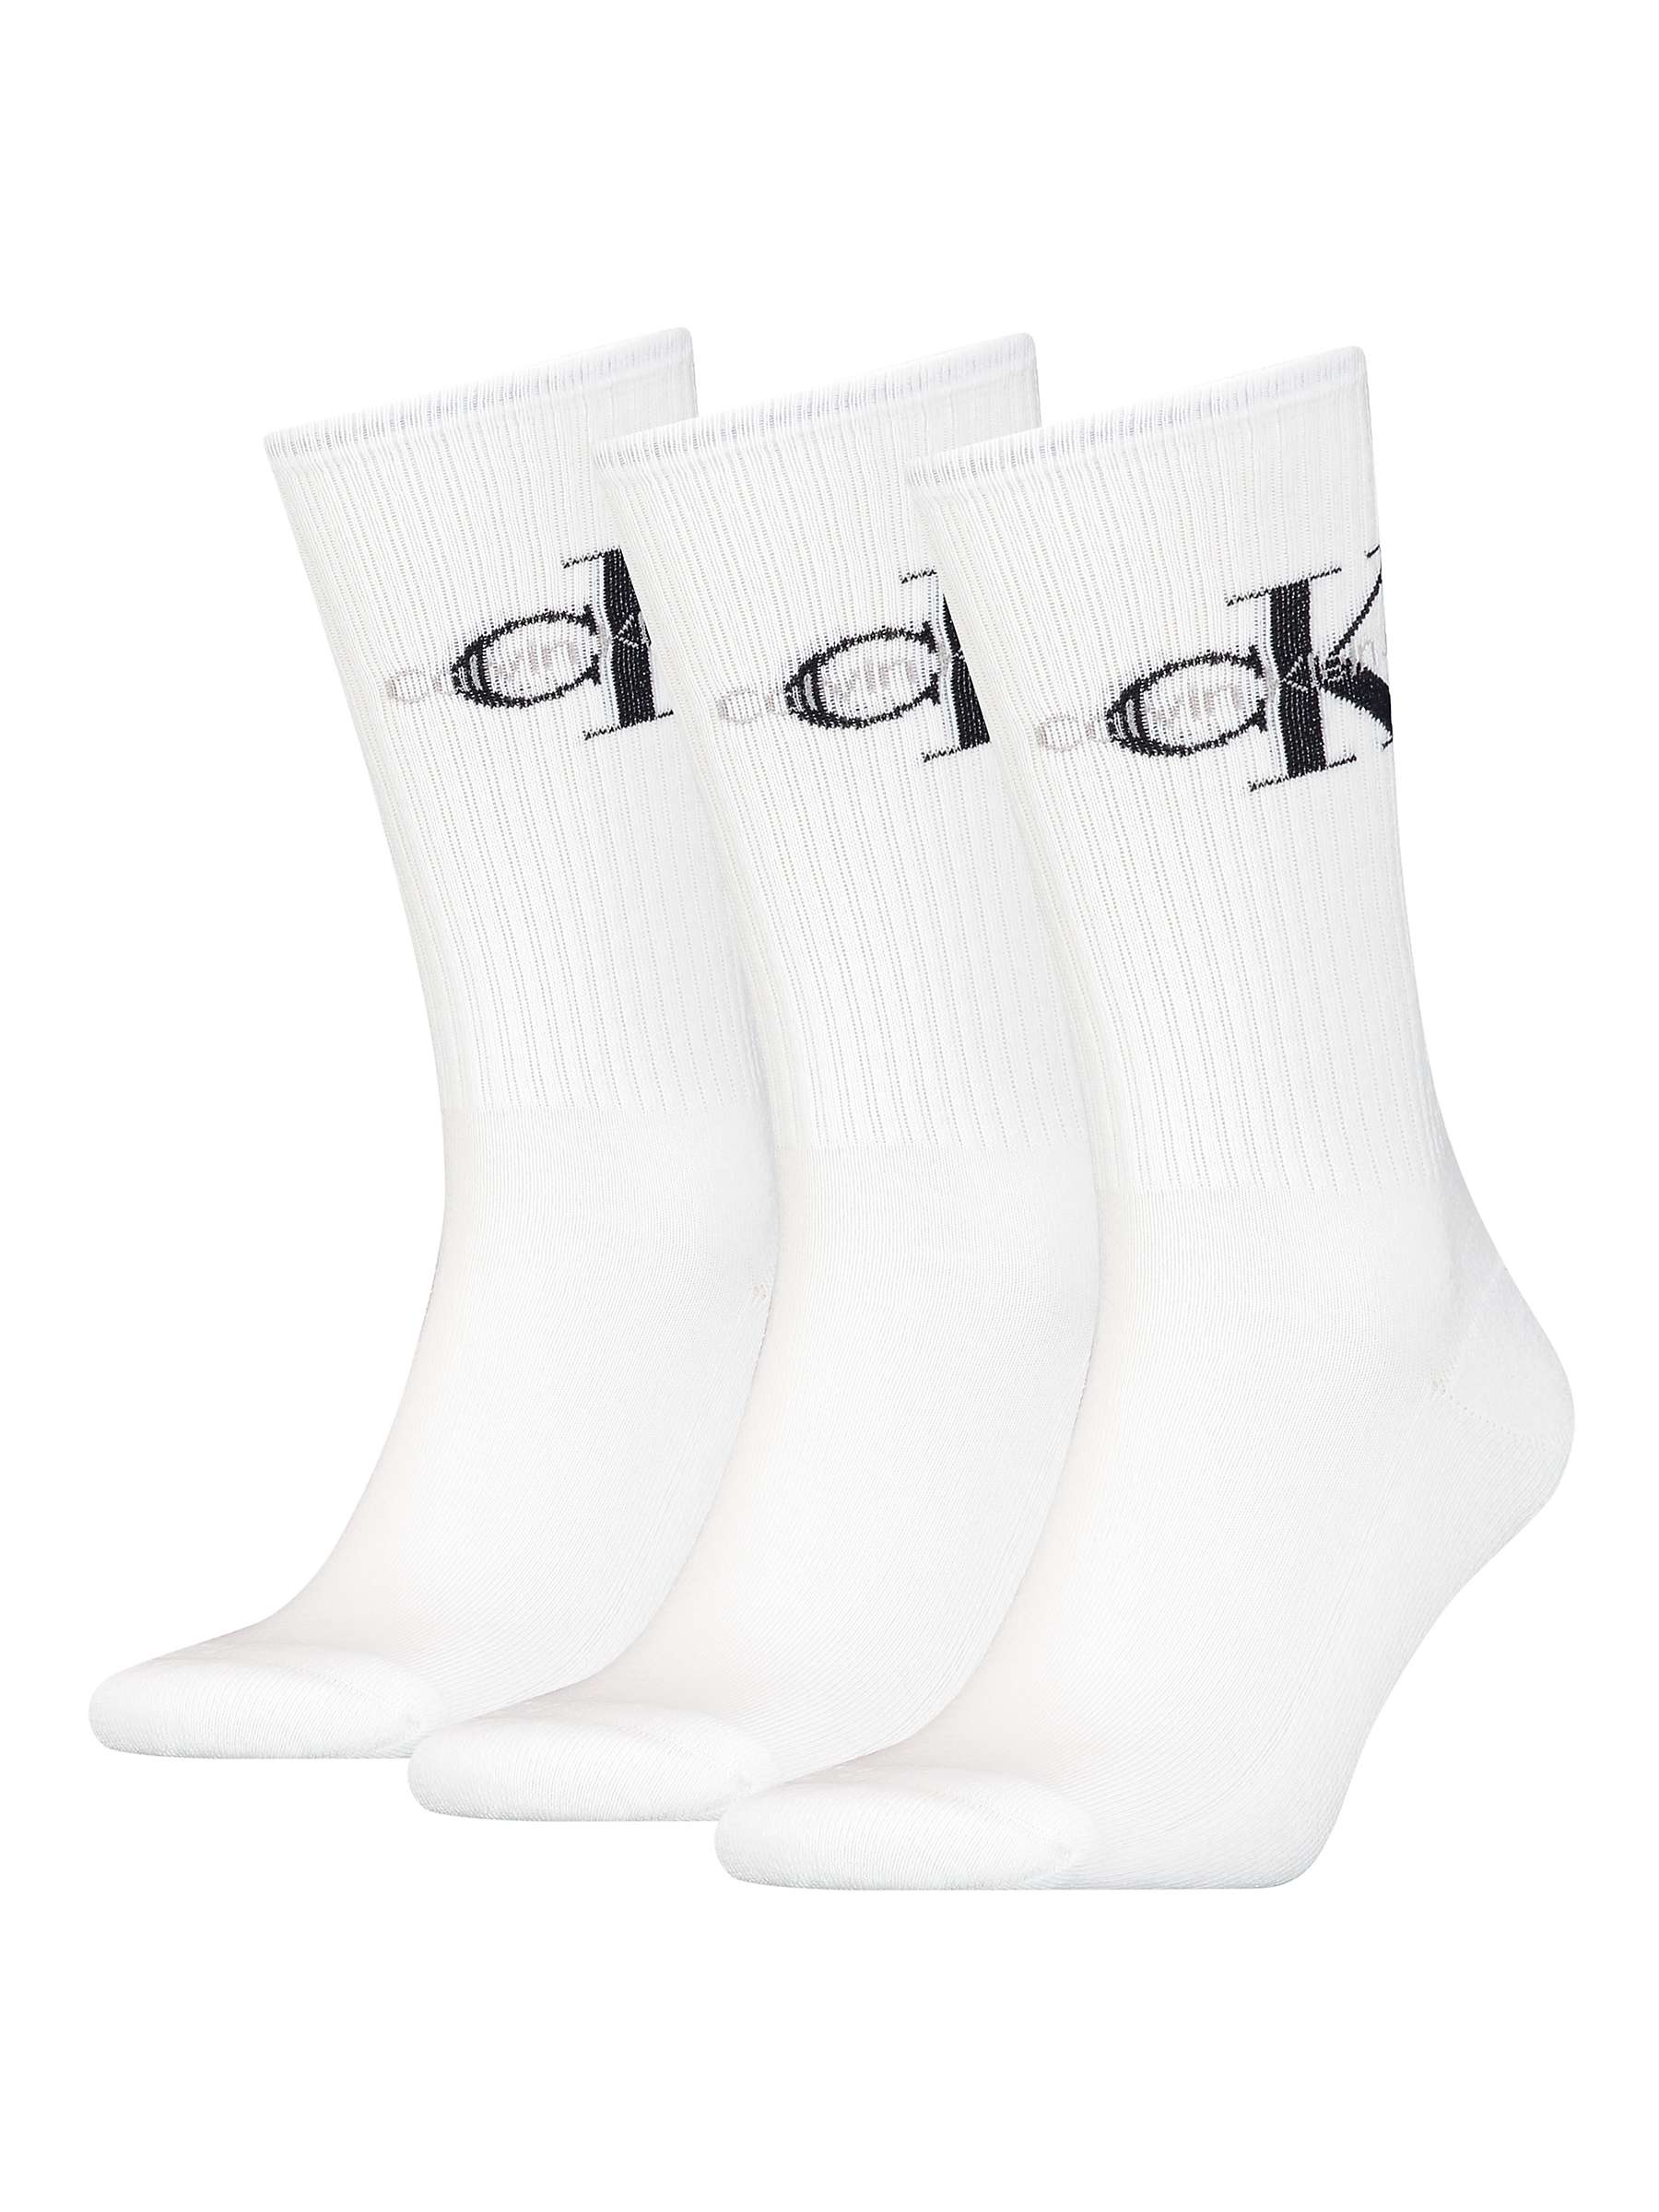 Calvin Klein Jeans Desmond Logo Socks, One Size, Pack of 3, 001 White ...